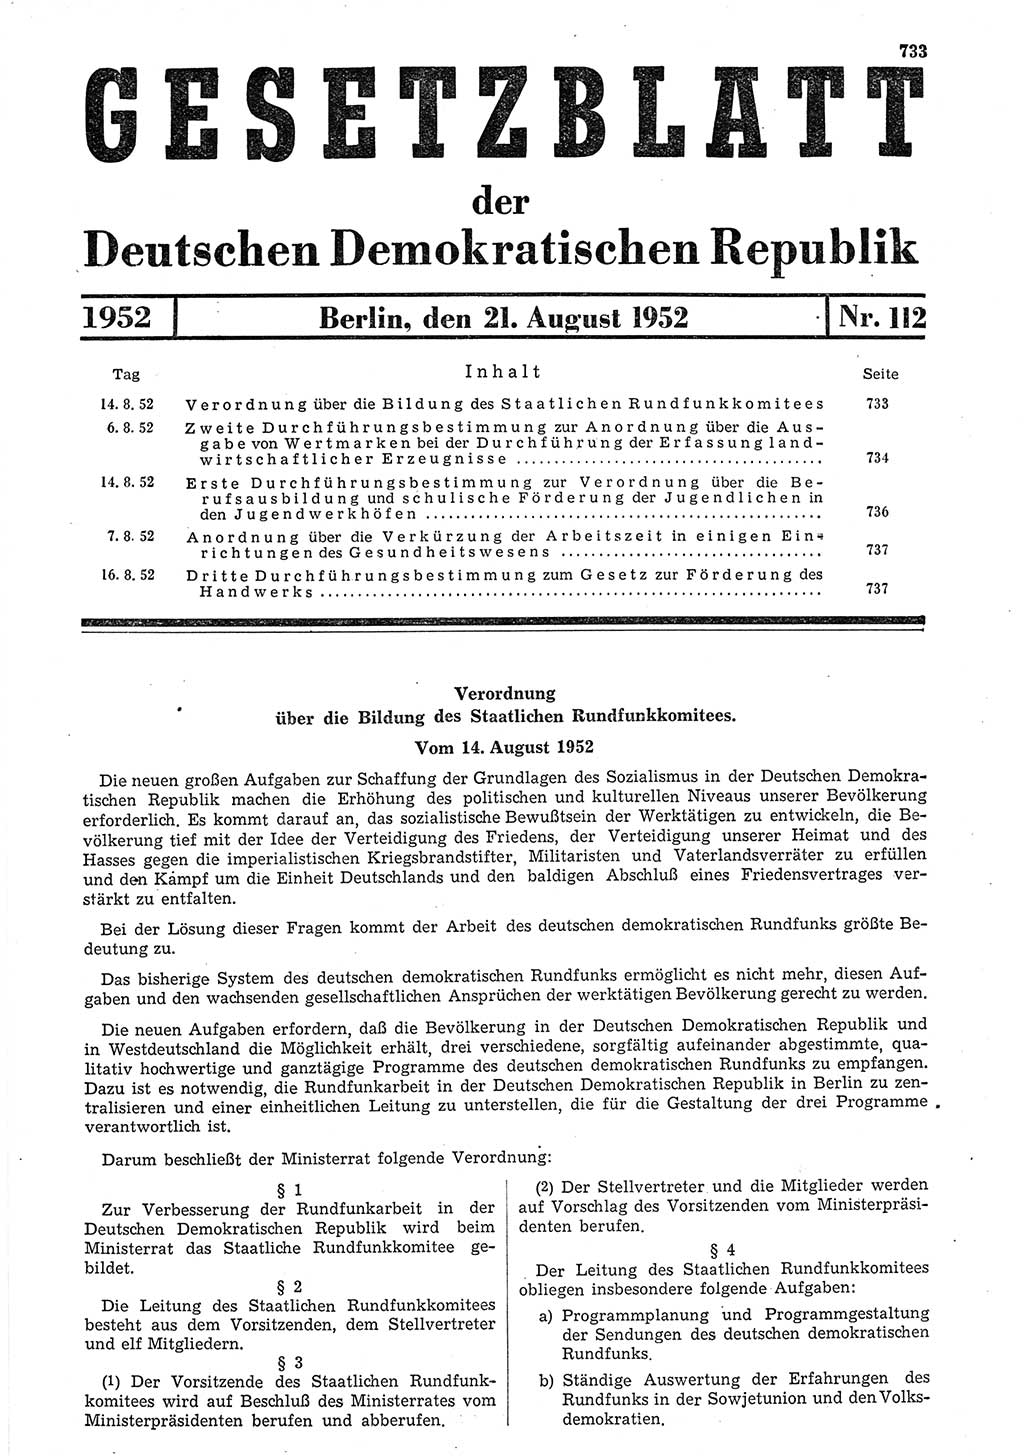 Gesetzblatt (GBl.) der Deutschen Demokratischen Republik (DDR) 1952, Seite 733 (GBl. DDR 1952, S. 733)